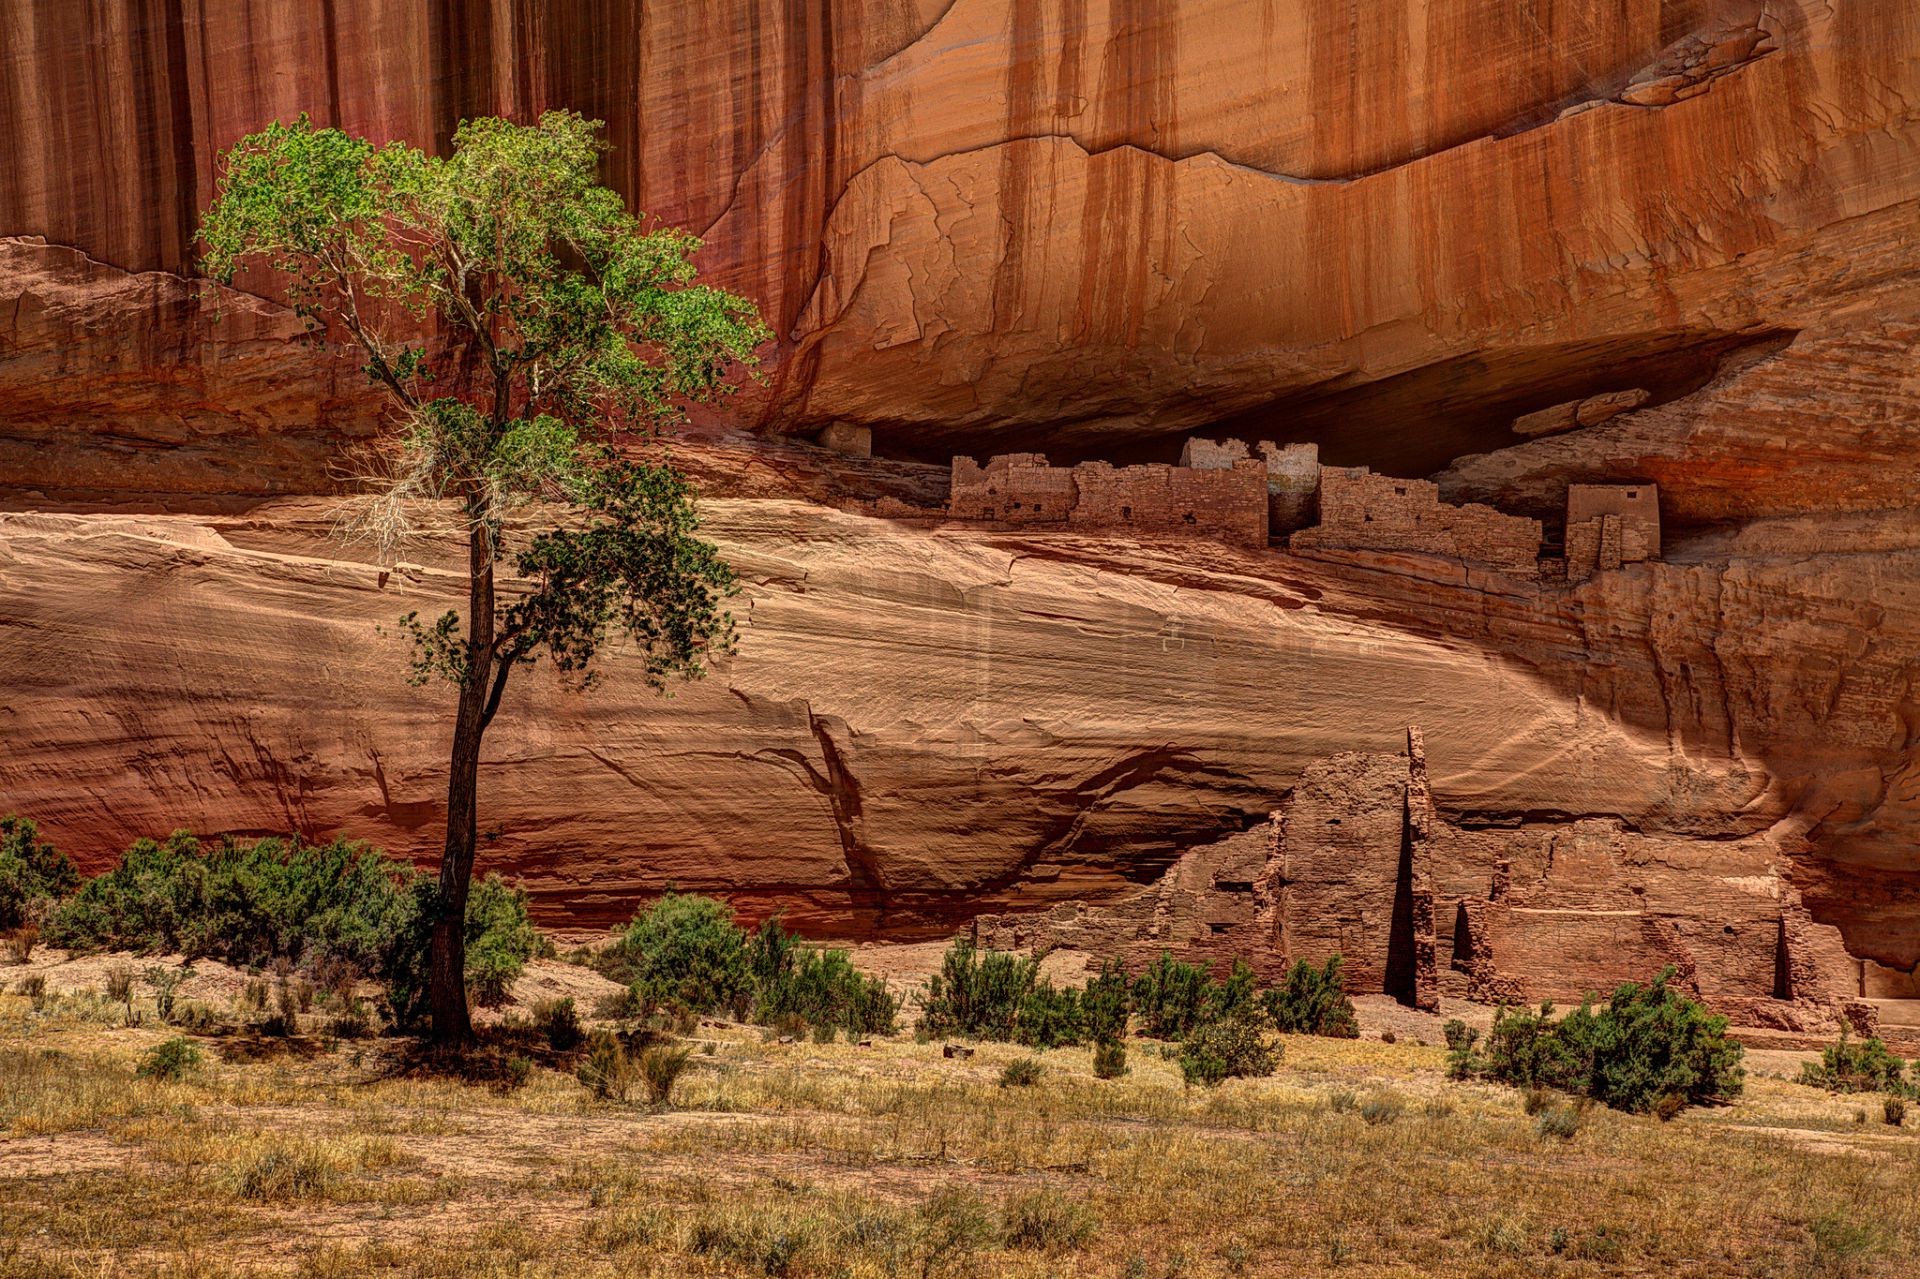 каньоны песчаник путешествия пустыня на открытом воздухе каньон природа рок пейзаж парк арид геология песок живописный дерево сухой скалы